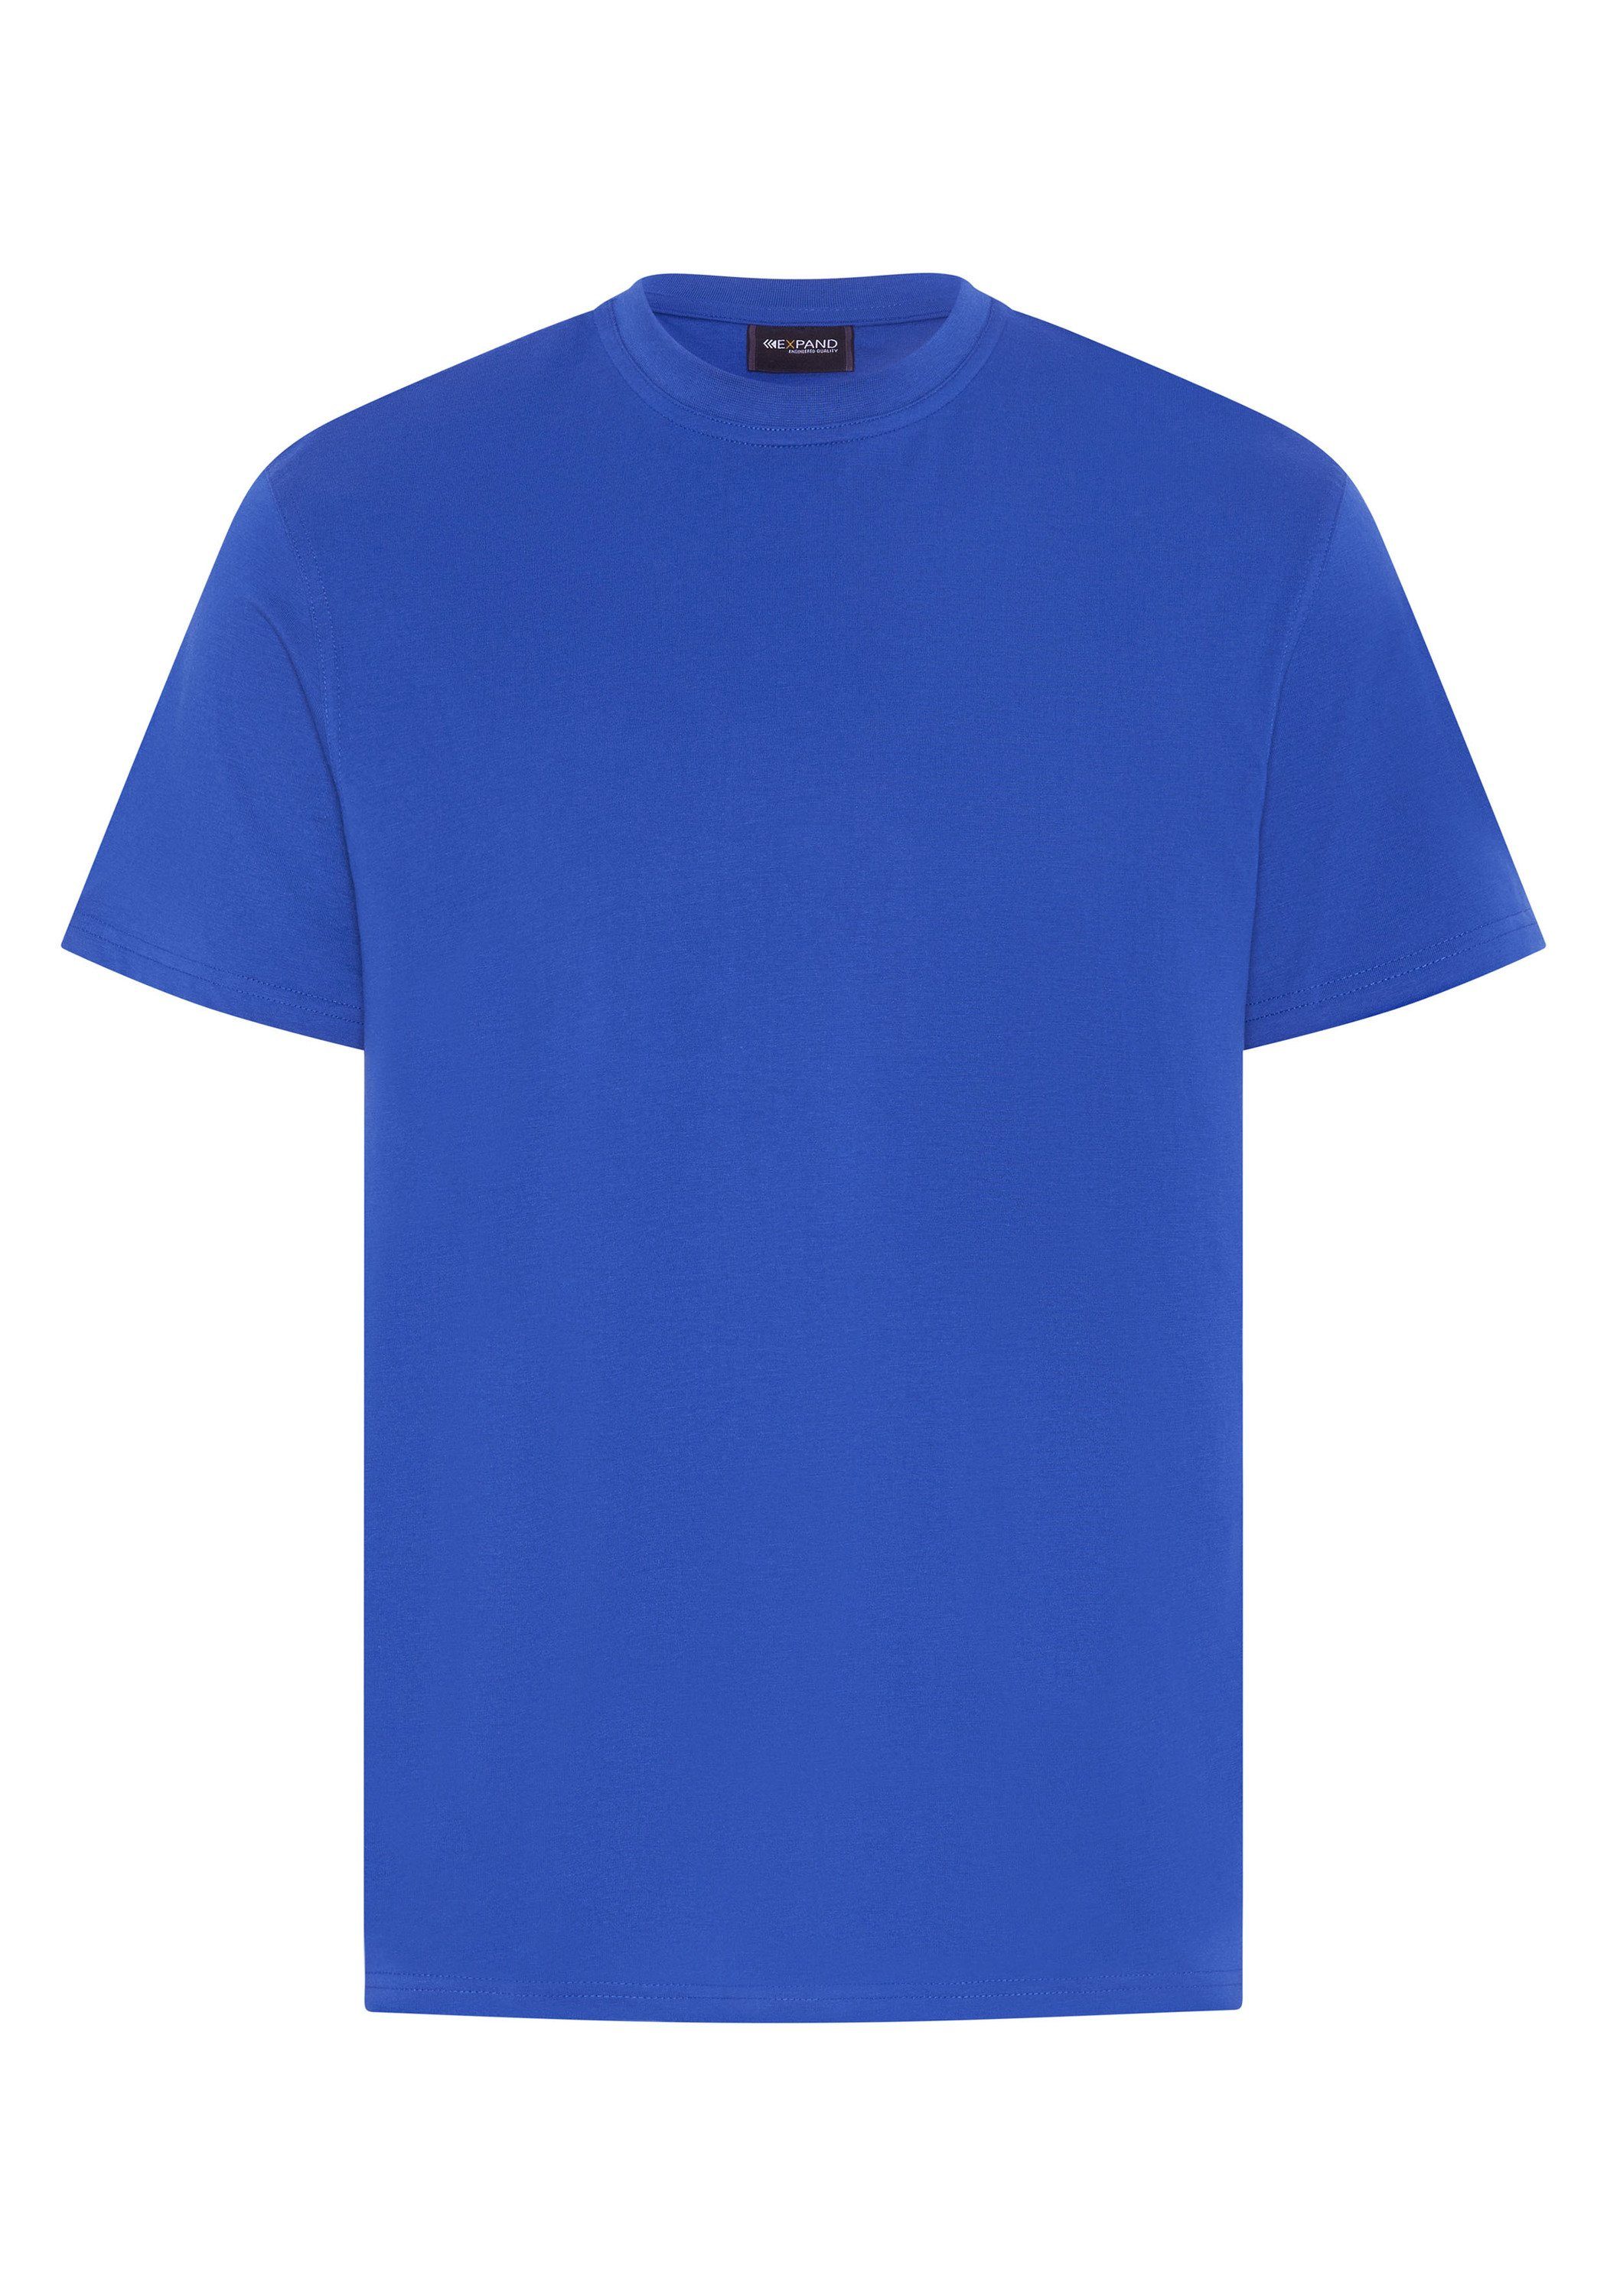 ultramarinblau T-Shirt einlaufvorbehandelt Expand